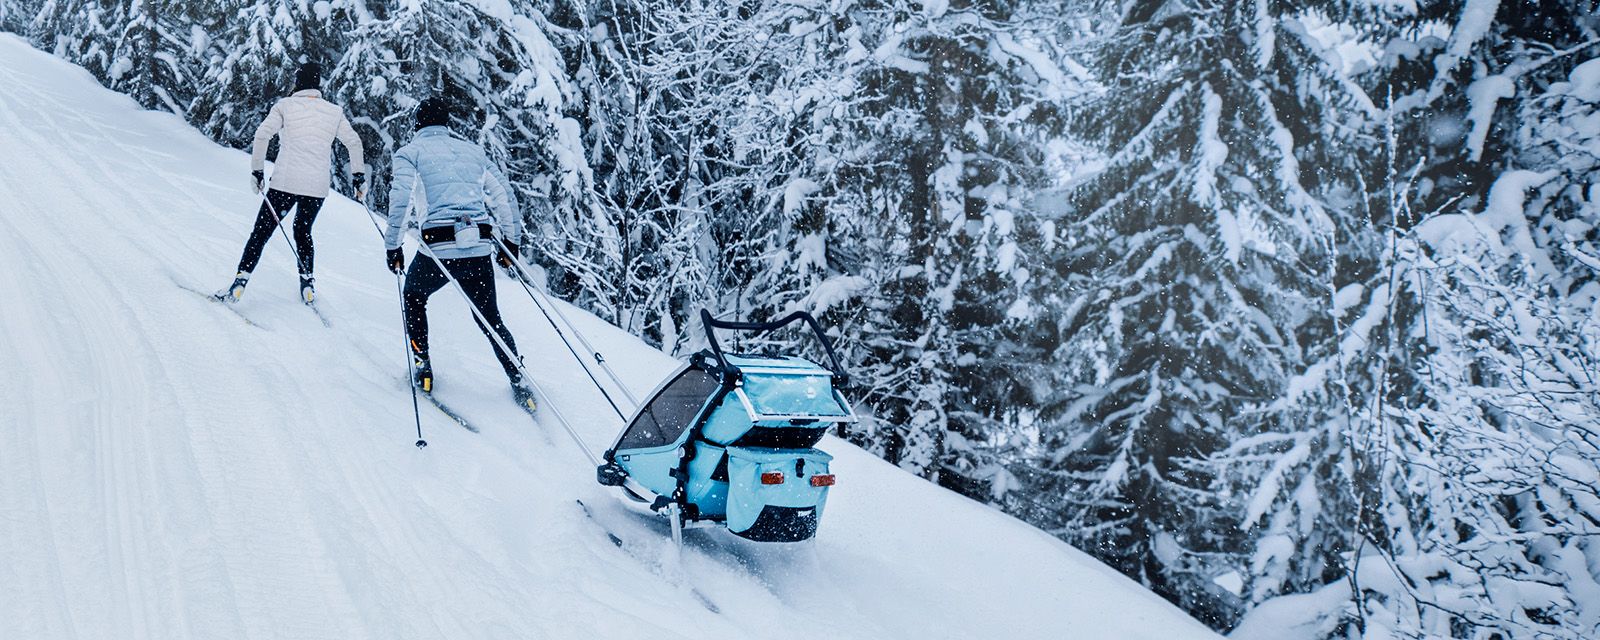 Dvoje ljudi idu na skijaško trčanje uz brijeg prekriven snijegom s djetetom u prikolici Thule Chariot Cross opremljenoj adapterom za skijanje.